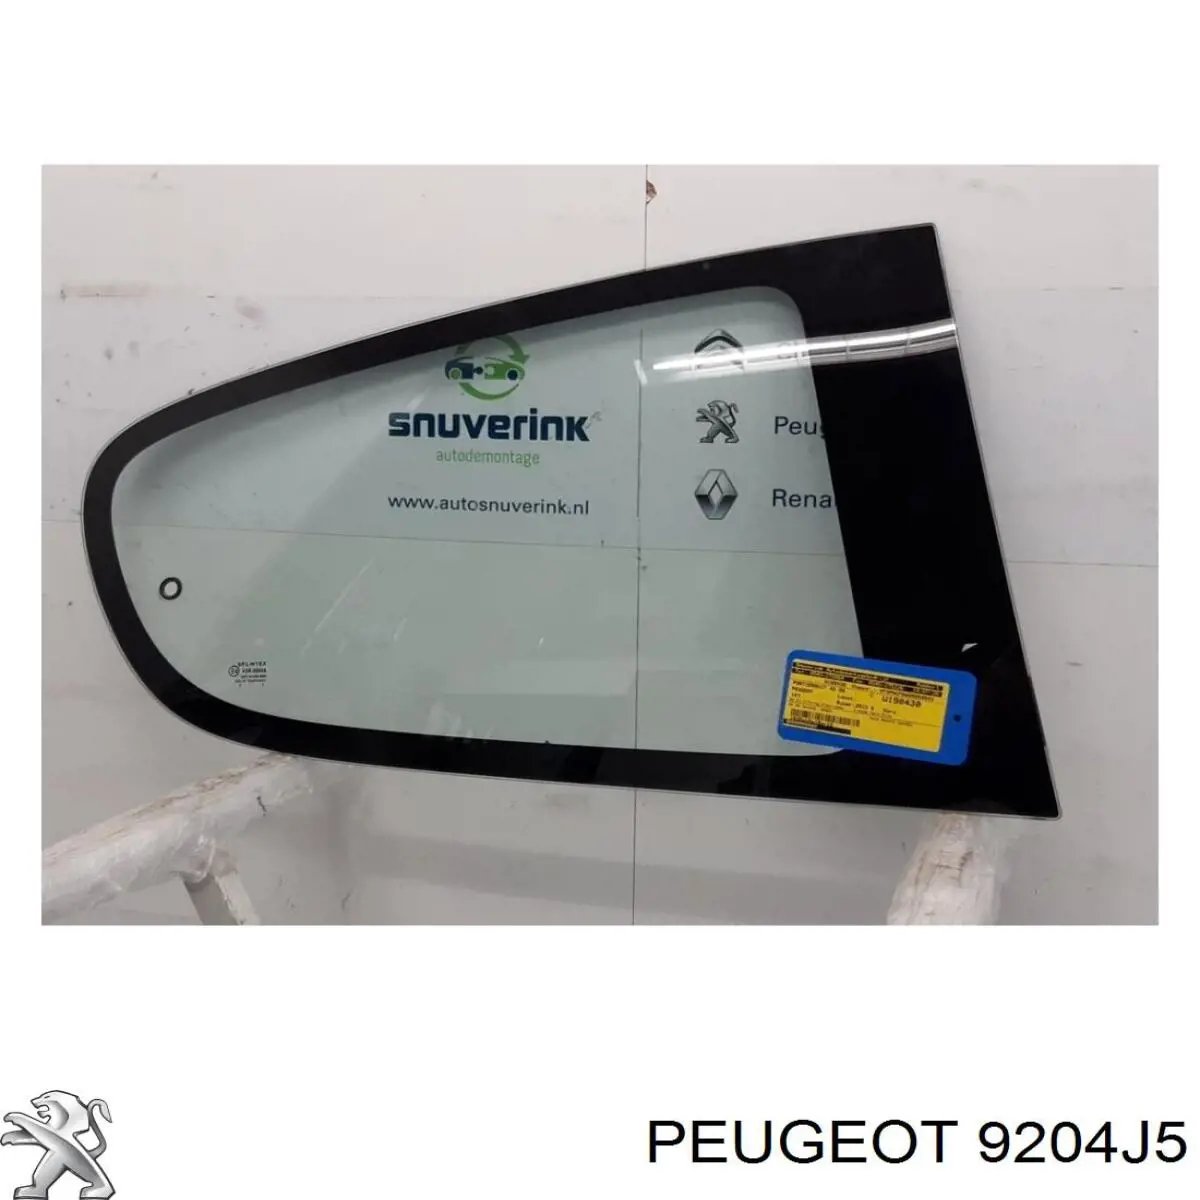 00009204J5 Peugeot/Citroen luna de puerta trasera derecha